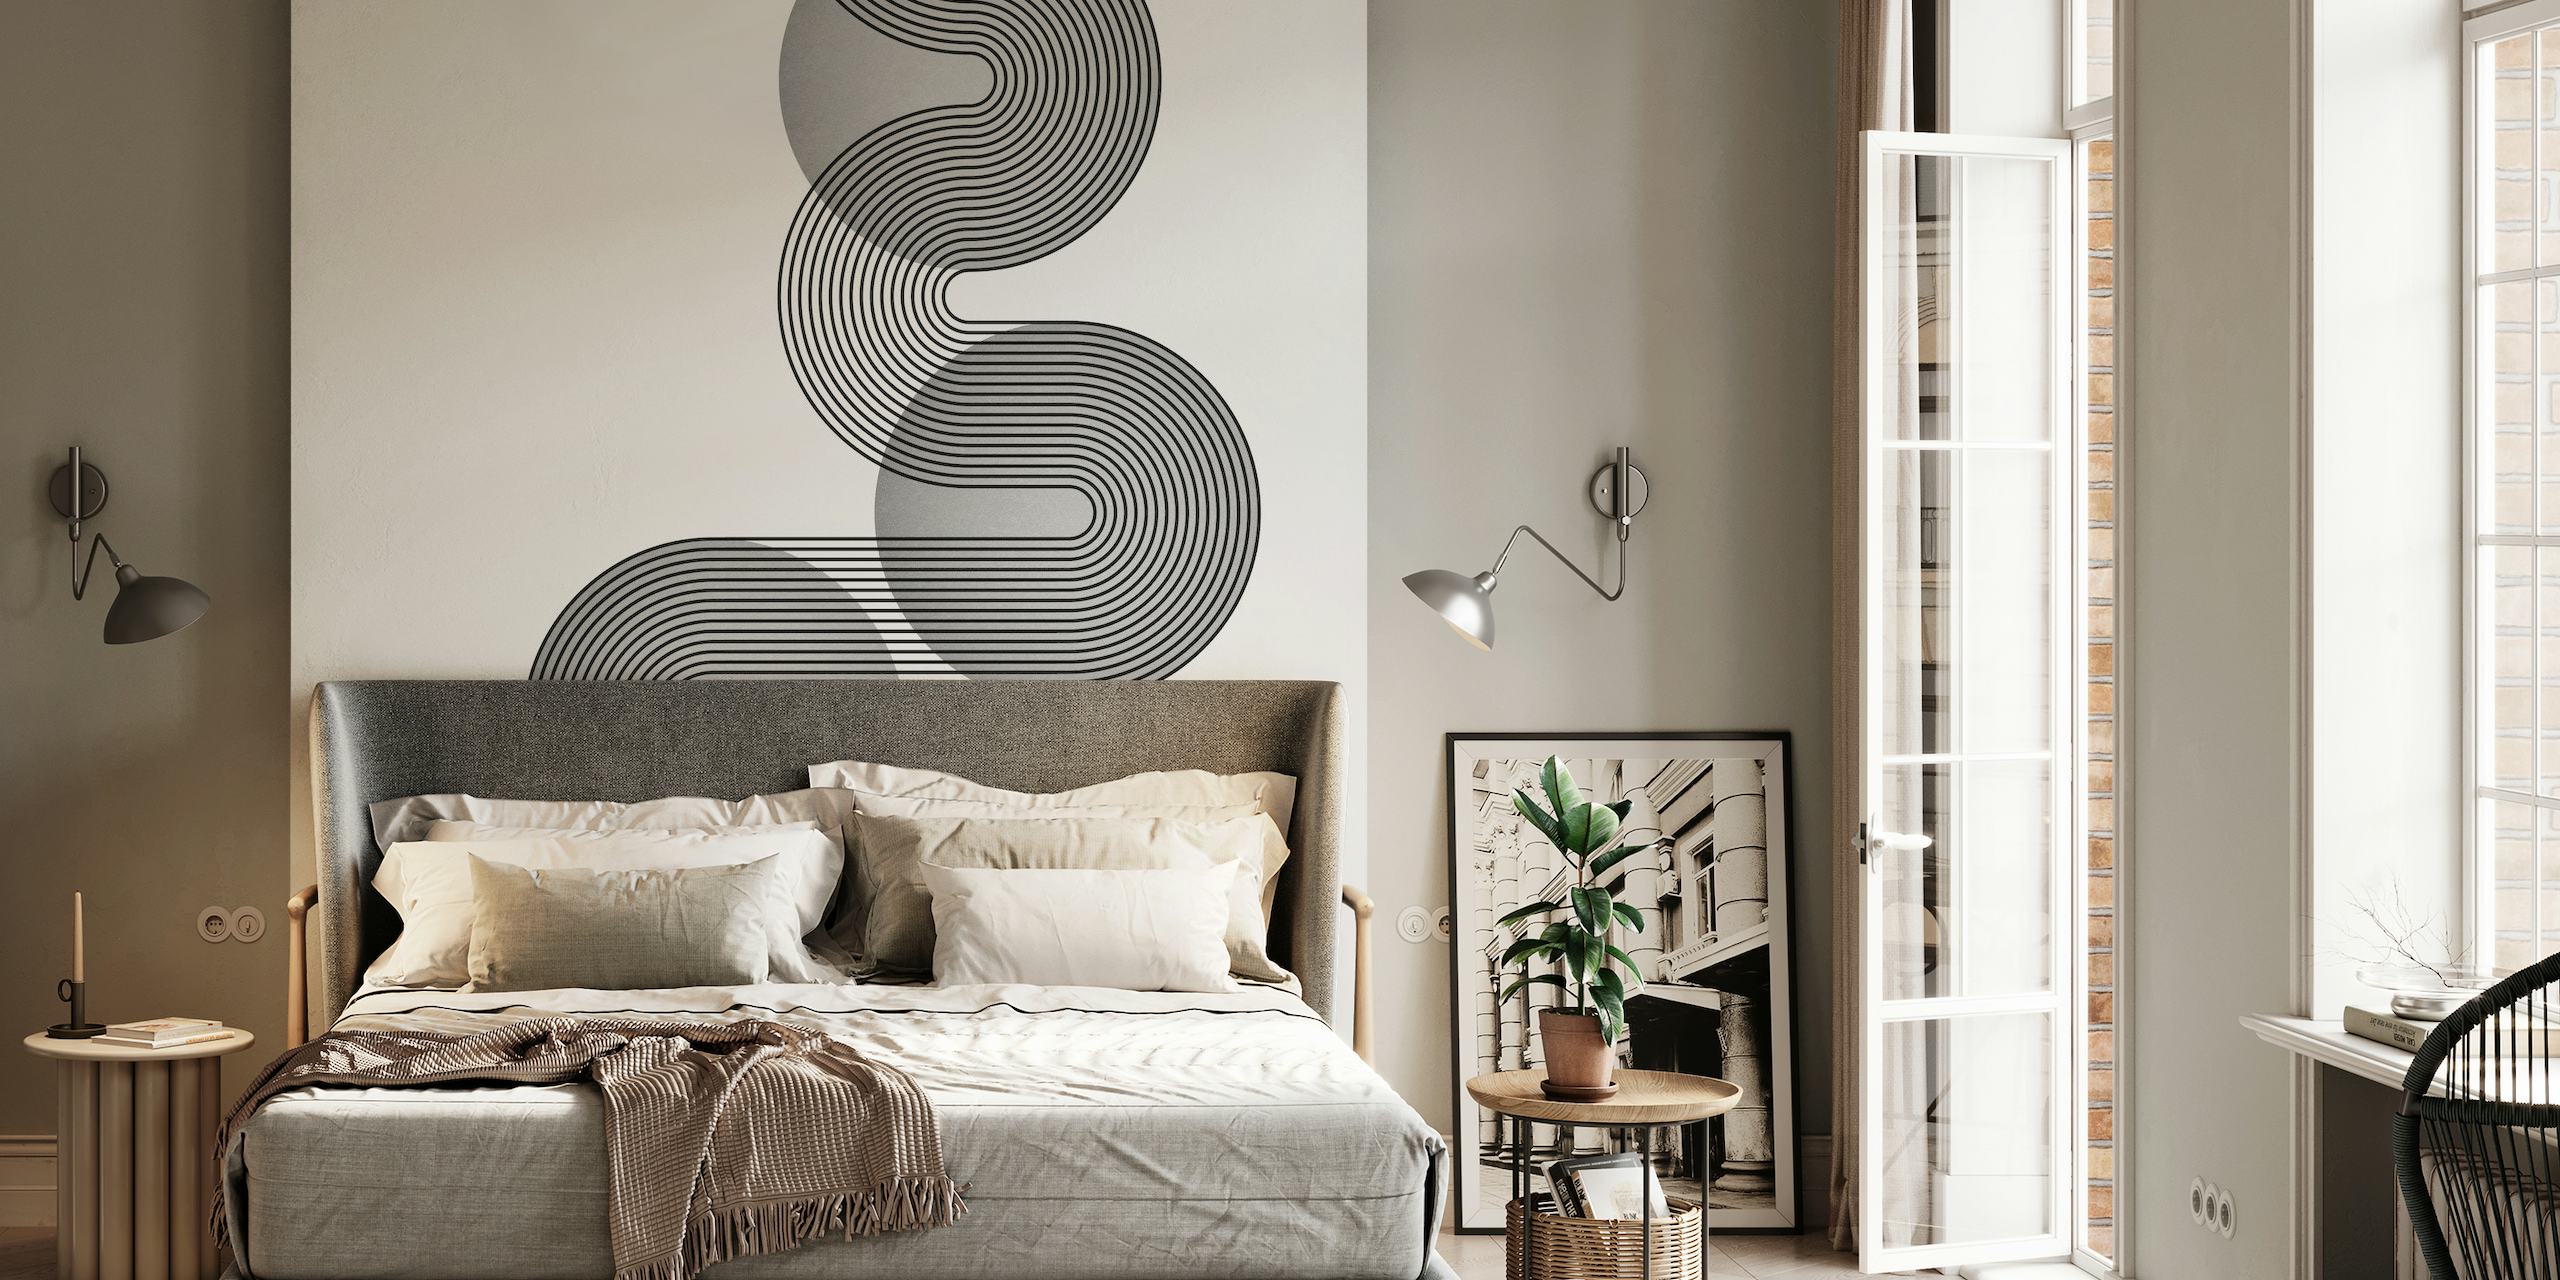 Mural monocromático inspirado en la Bauhaus con formas geométricas entrelazadas en tonos platino